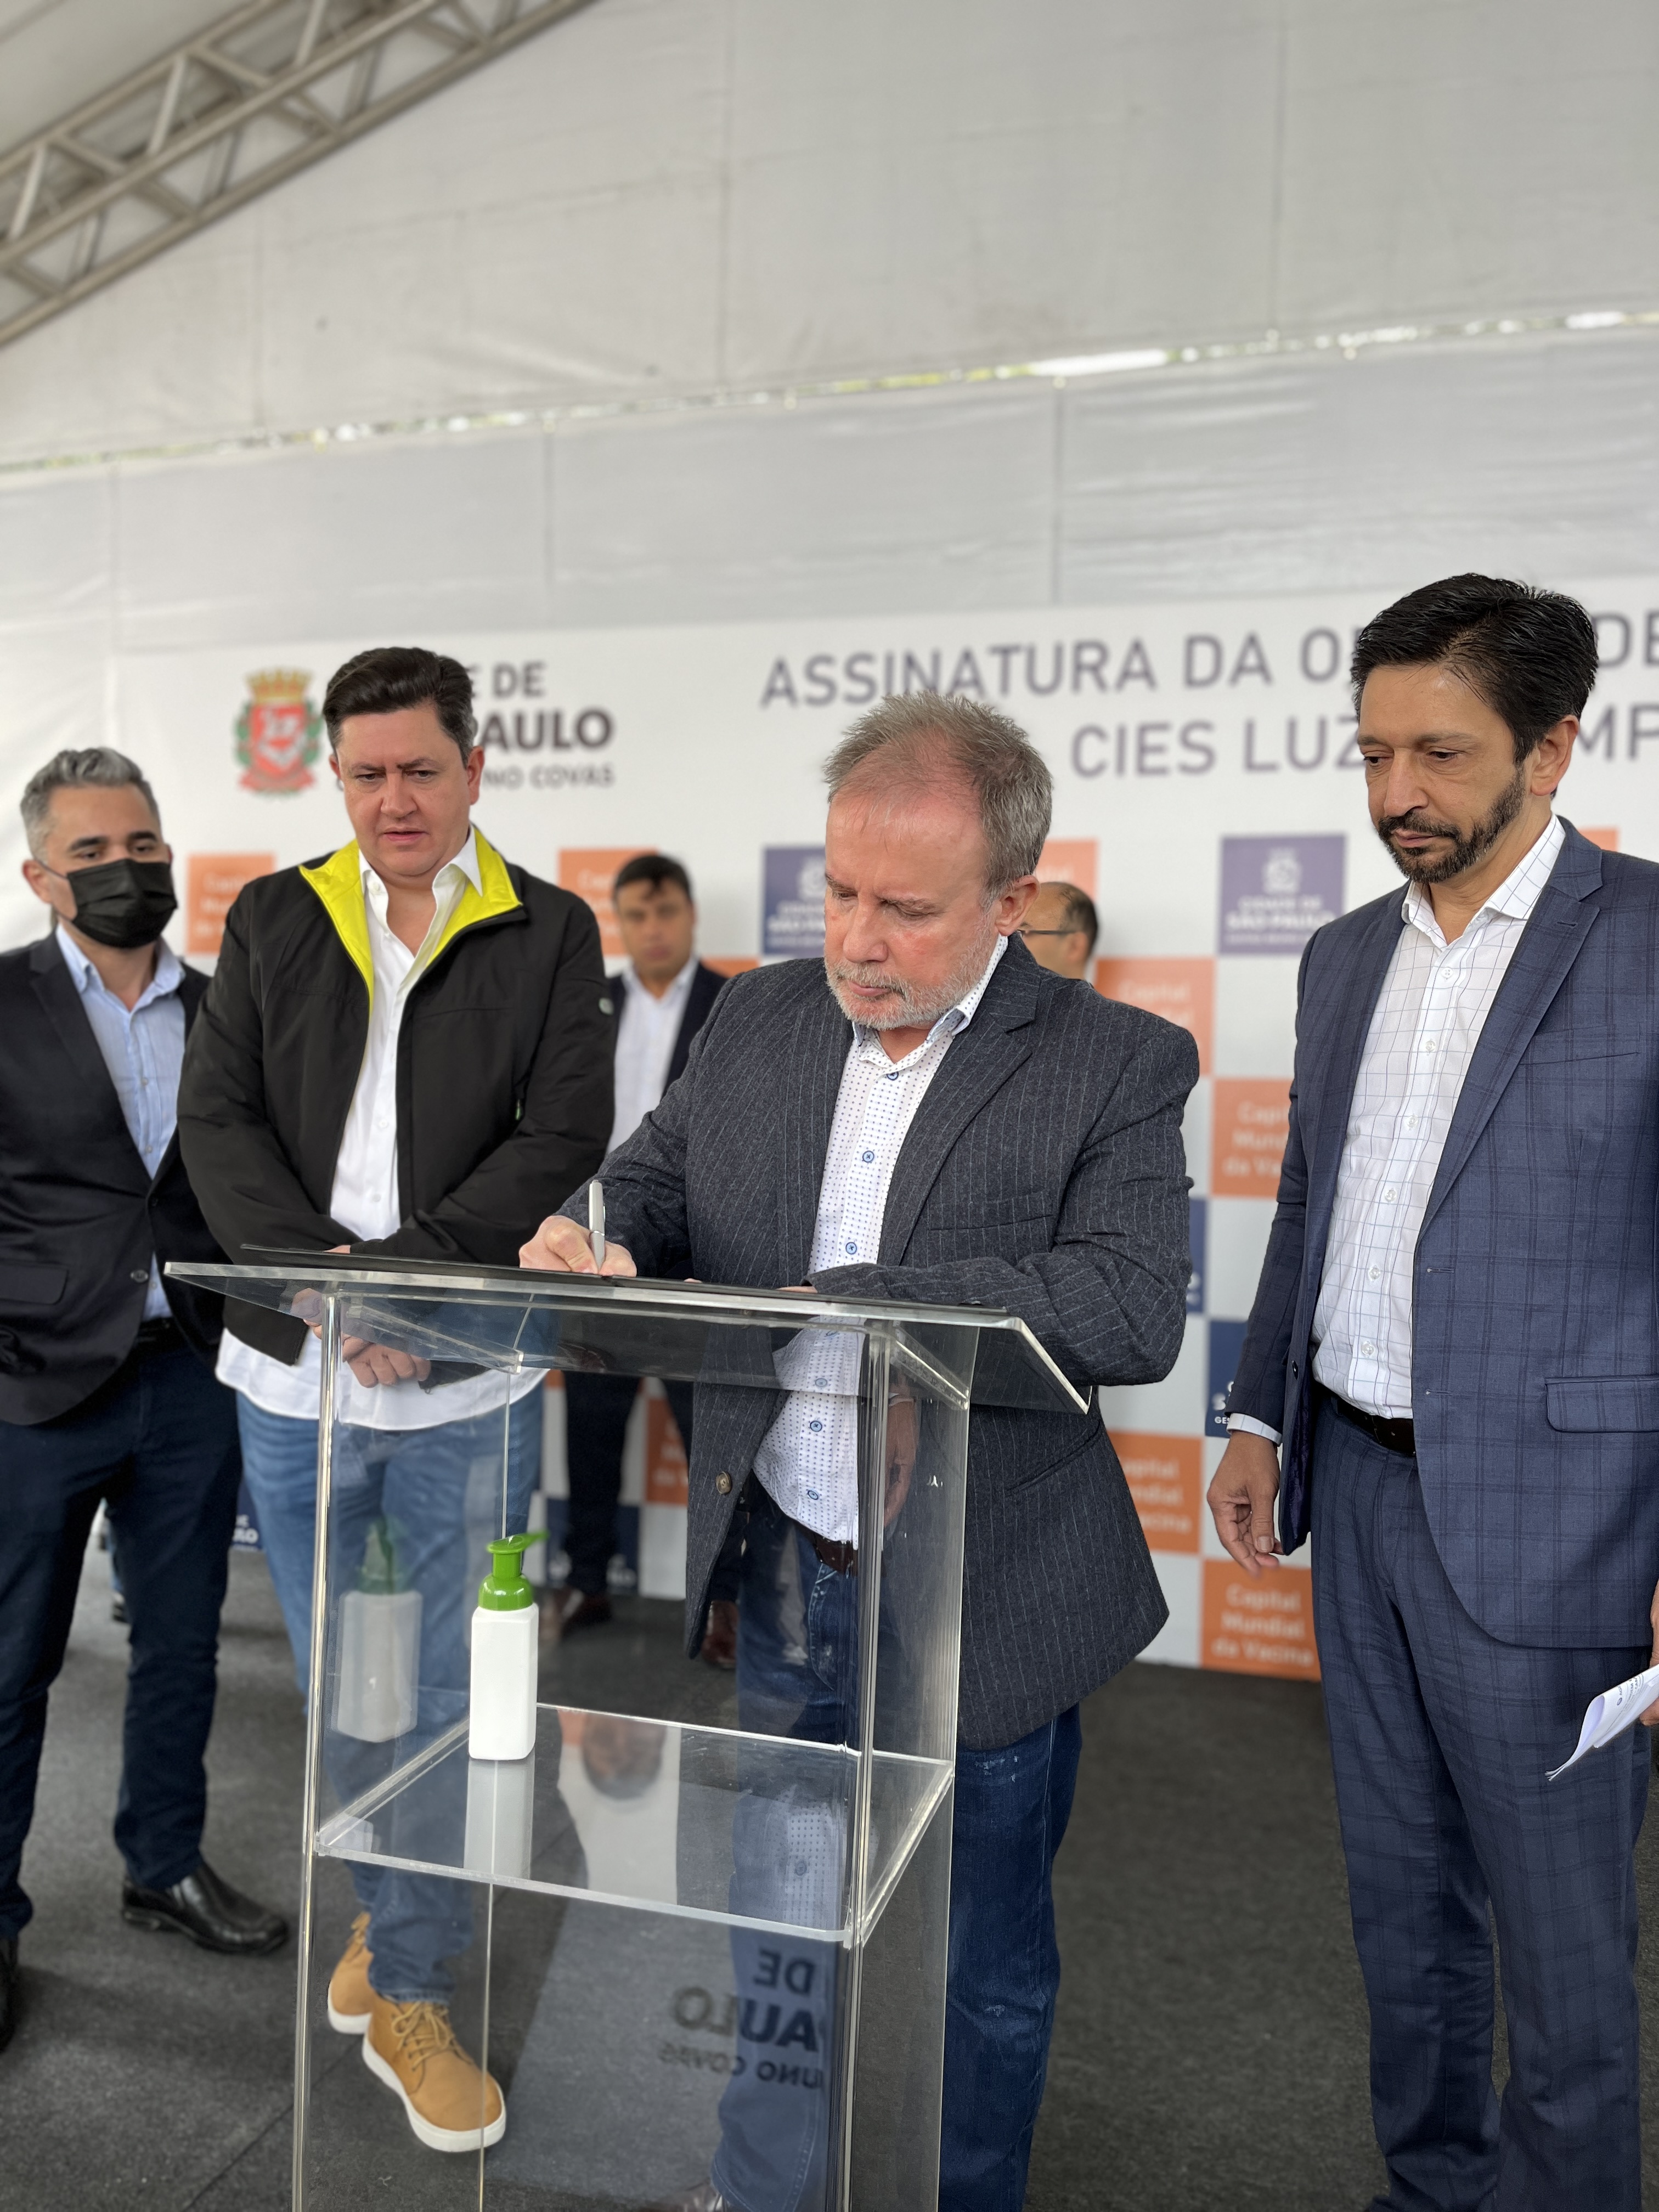  Secretário da Saúde Luiz Carlos Zamarco assina a ordem de início das obras do CEIS Luz - Campos Elíseos.